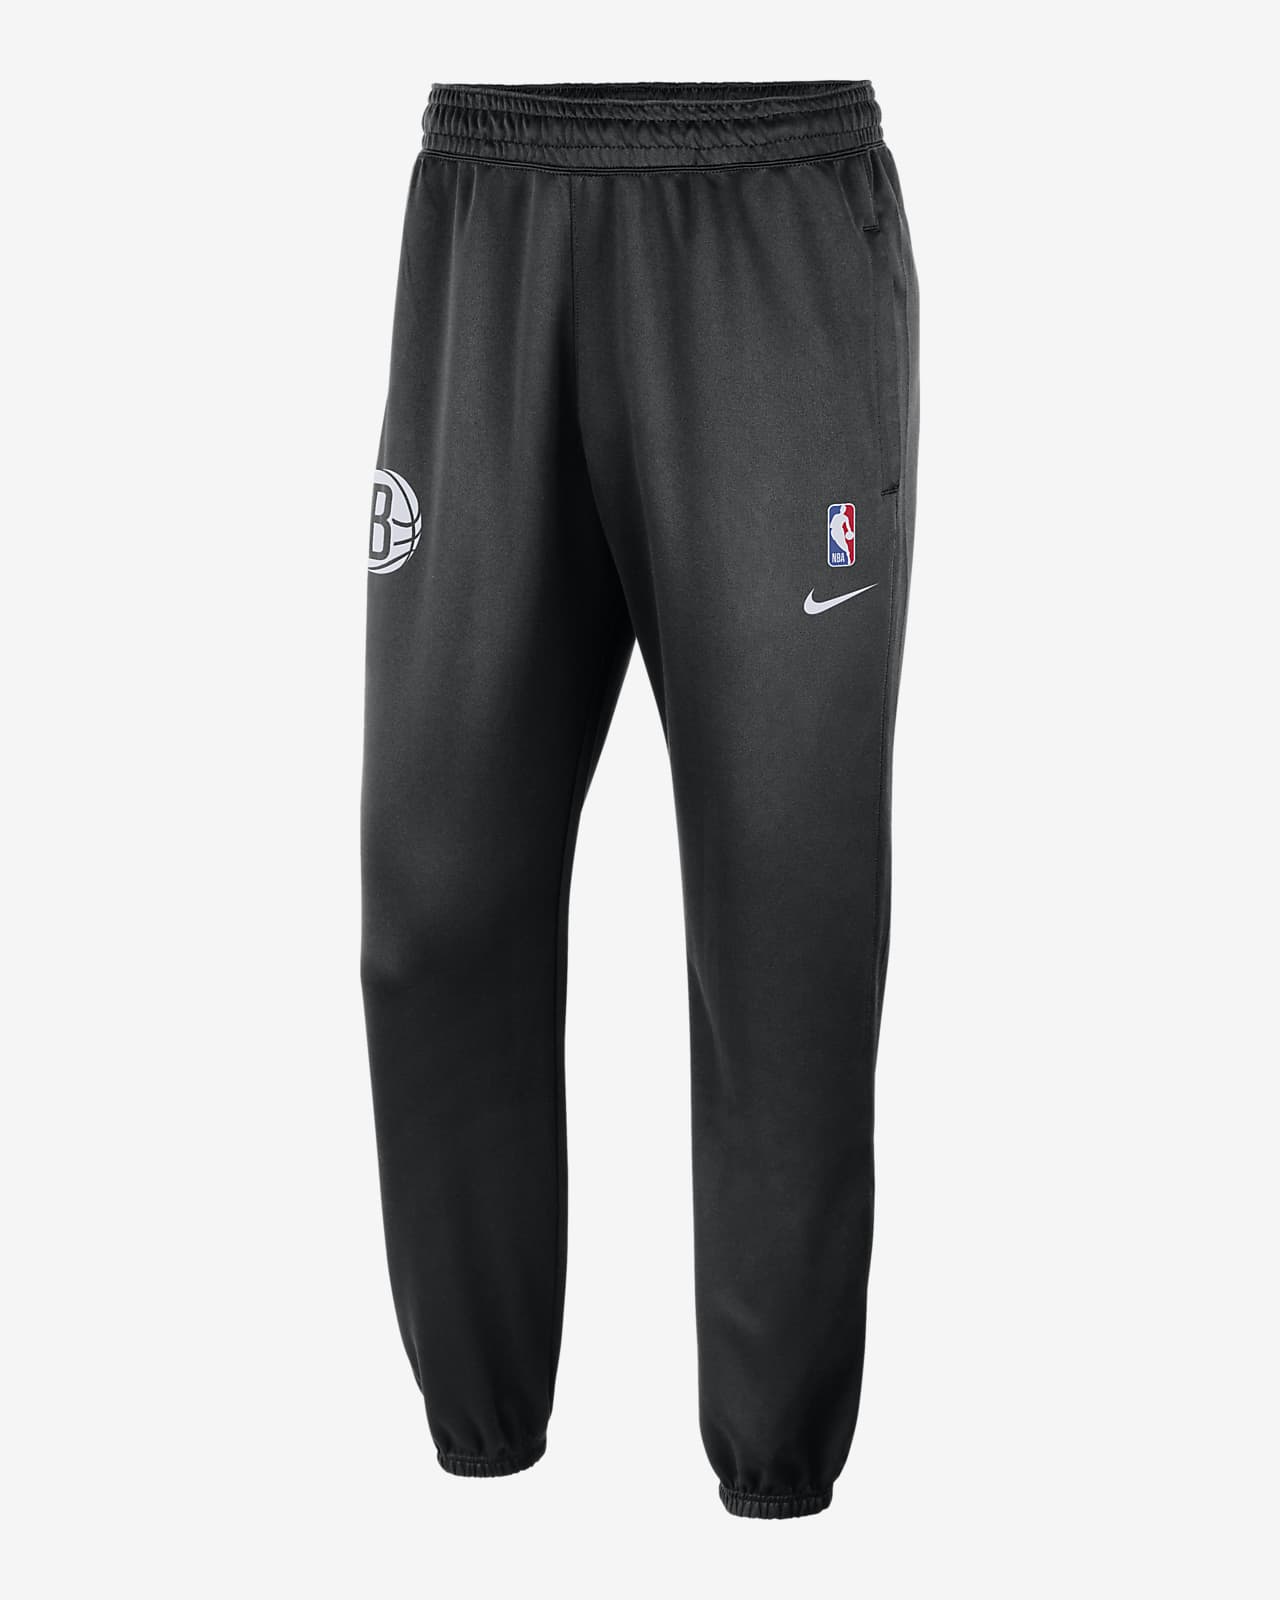 Spodnie męskie Brooklyn Nets Spotlight Nike Dri-FIT NBA